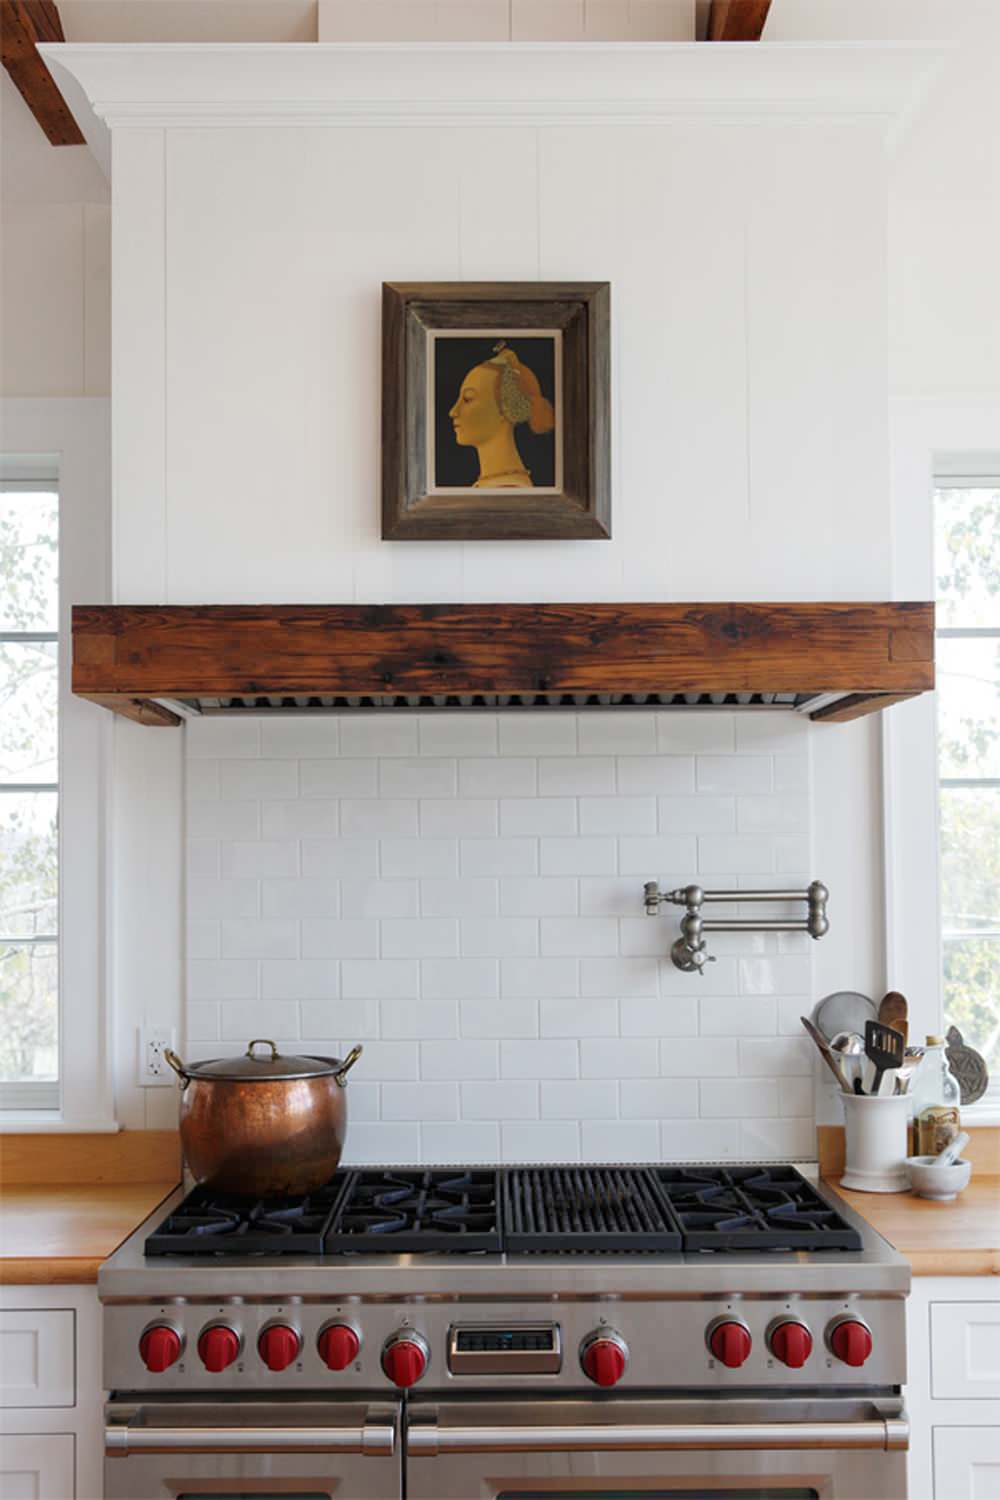 Стена над плитой. Кухонная вытяжка Kitchen Hood. Вытяжка для газовой плиты. Вытяжка в интерьере кухни. Вытяжка в кухне с газовой плитой.